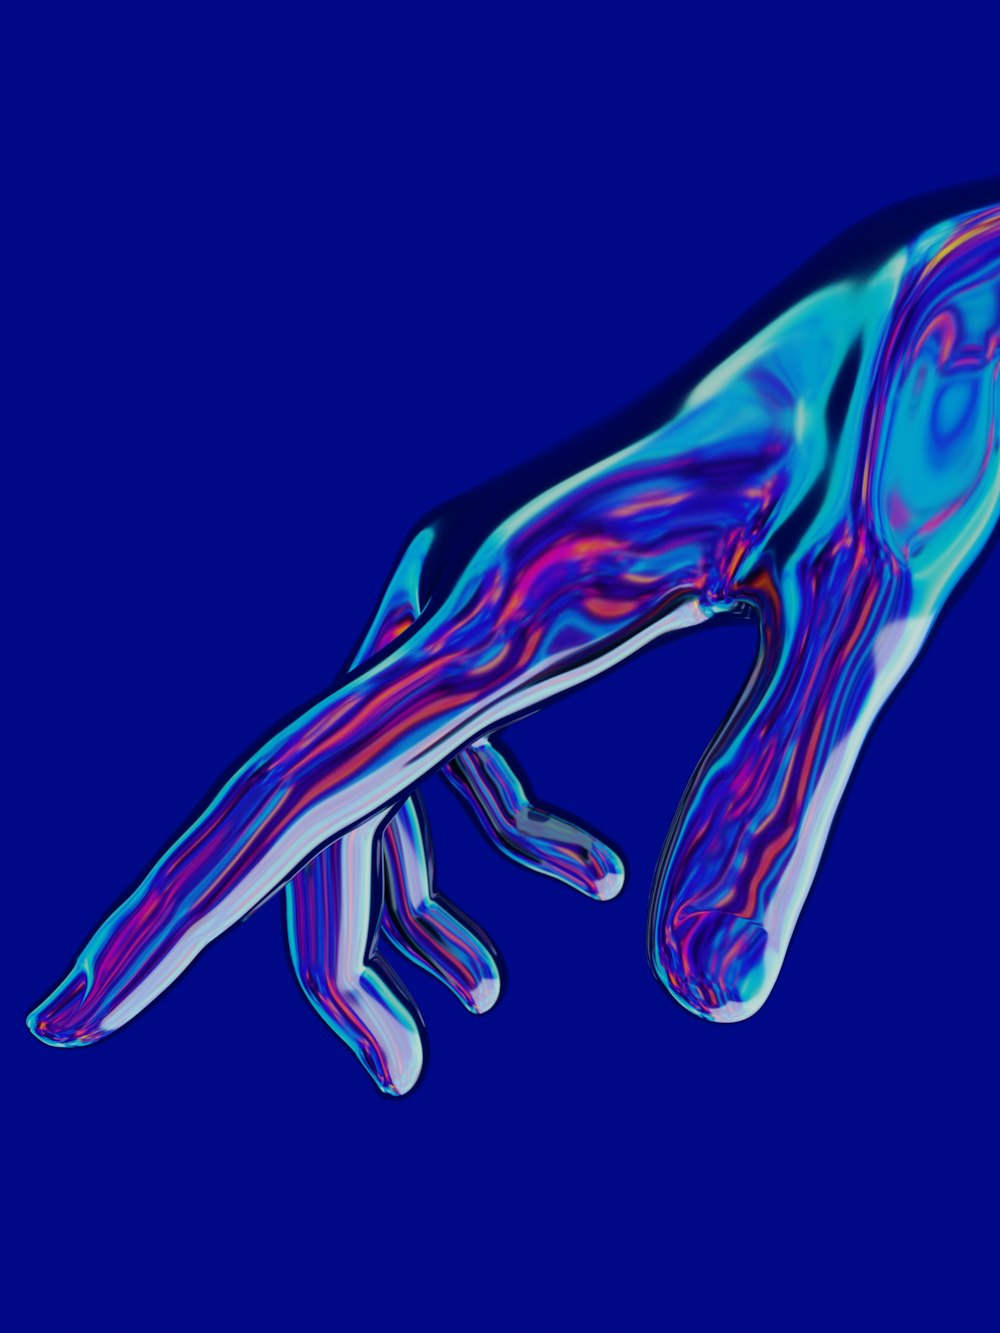 uma imagem azul e roxa da mão de uma pessoa